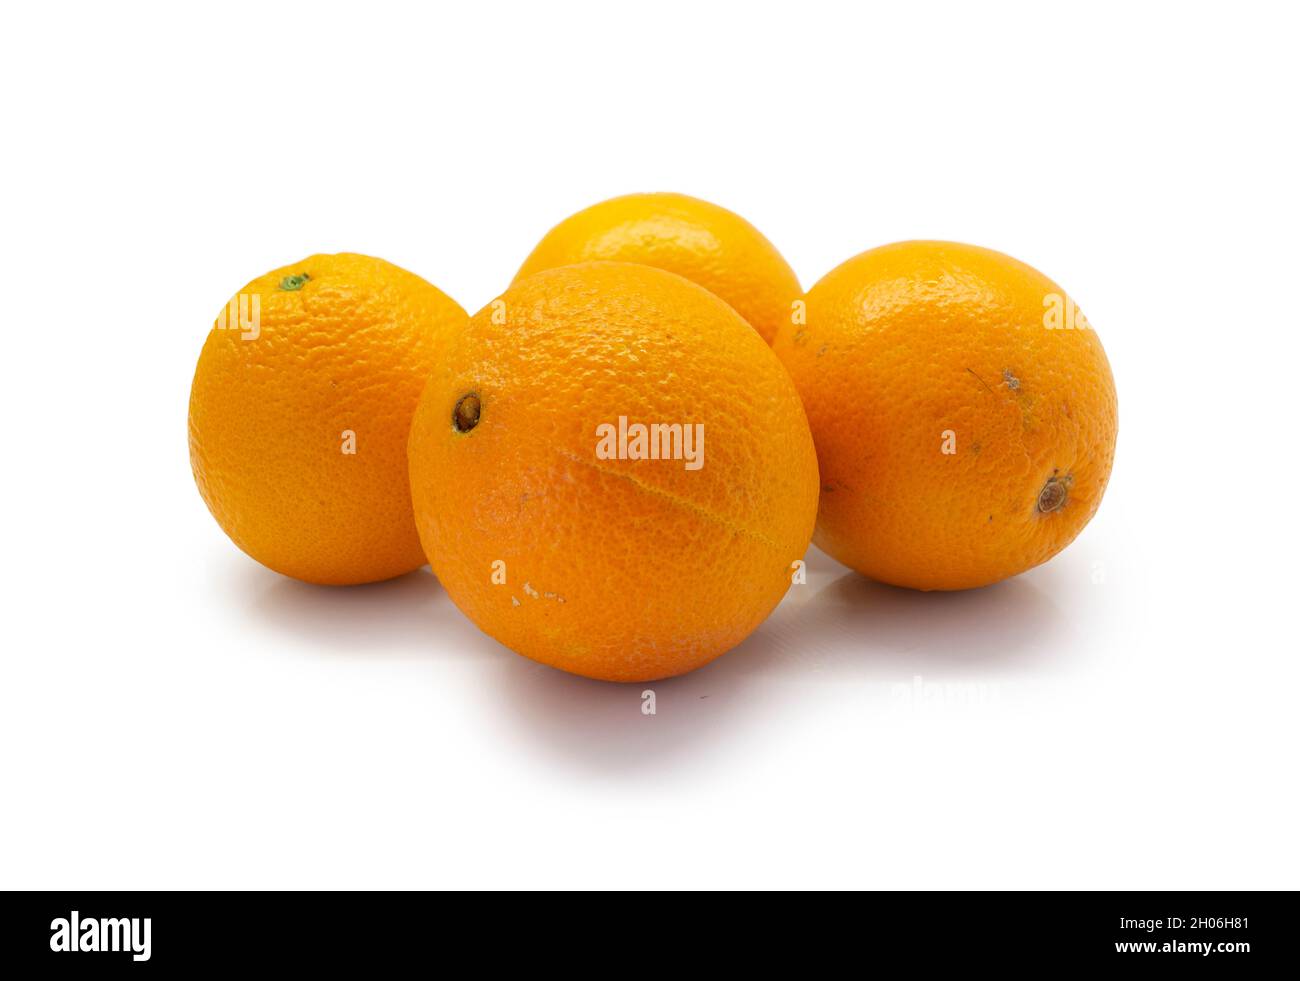 Oranges isolated on white background Stock Photo